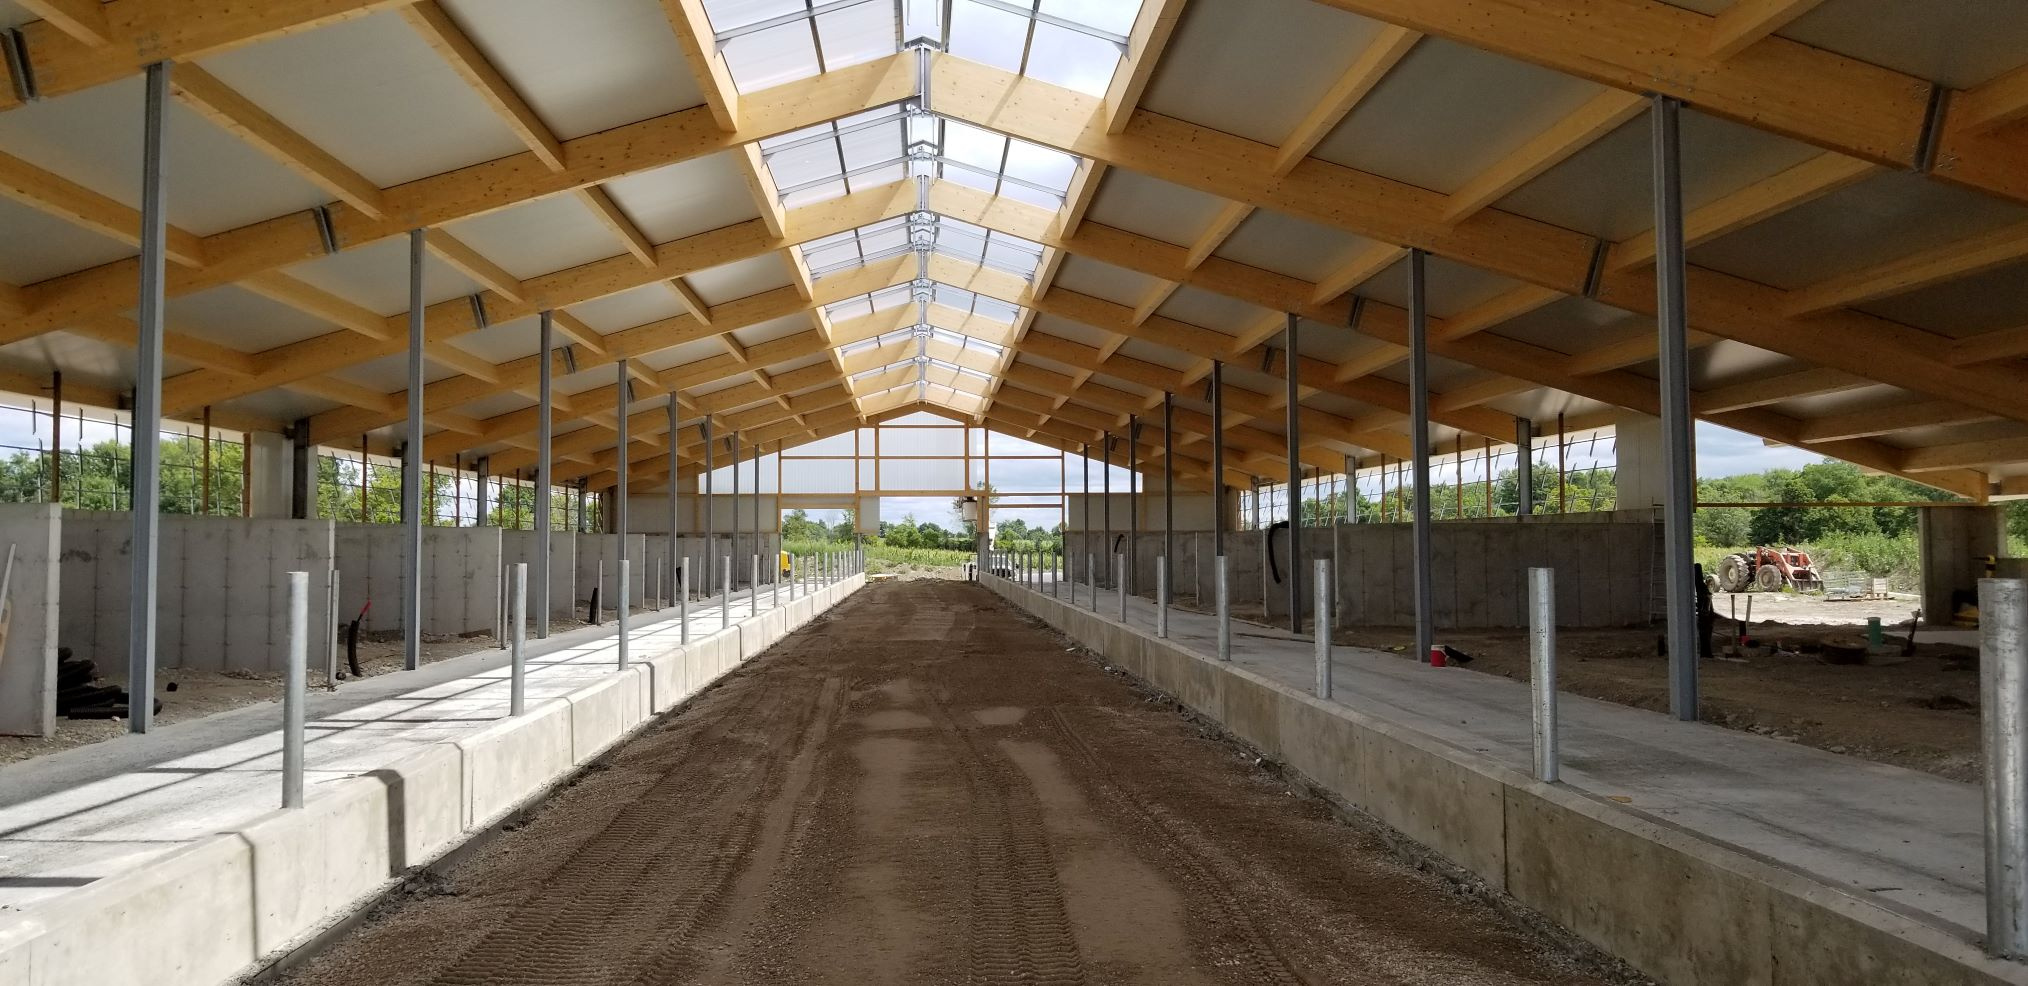 2019 Sterling, Ontario - Heifer barn